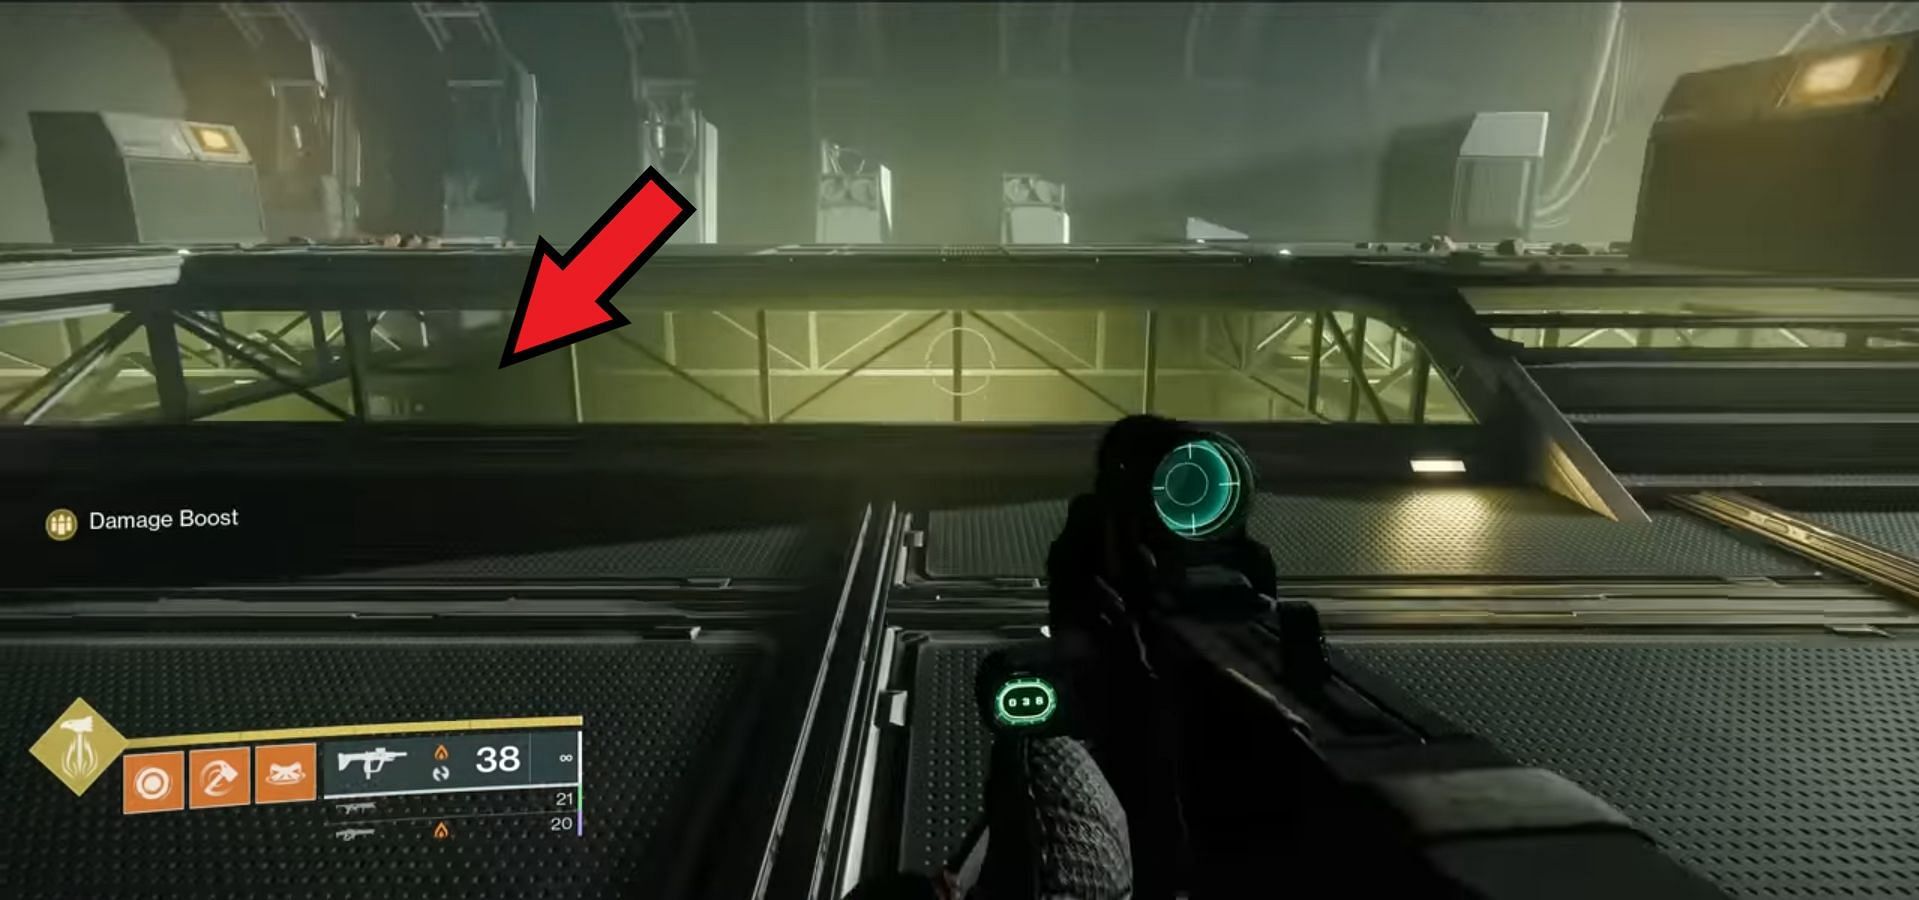 La segunda ubicación de registro está debajo de la plataforma principal (Imagen a través de Destiny 2) 